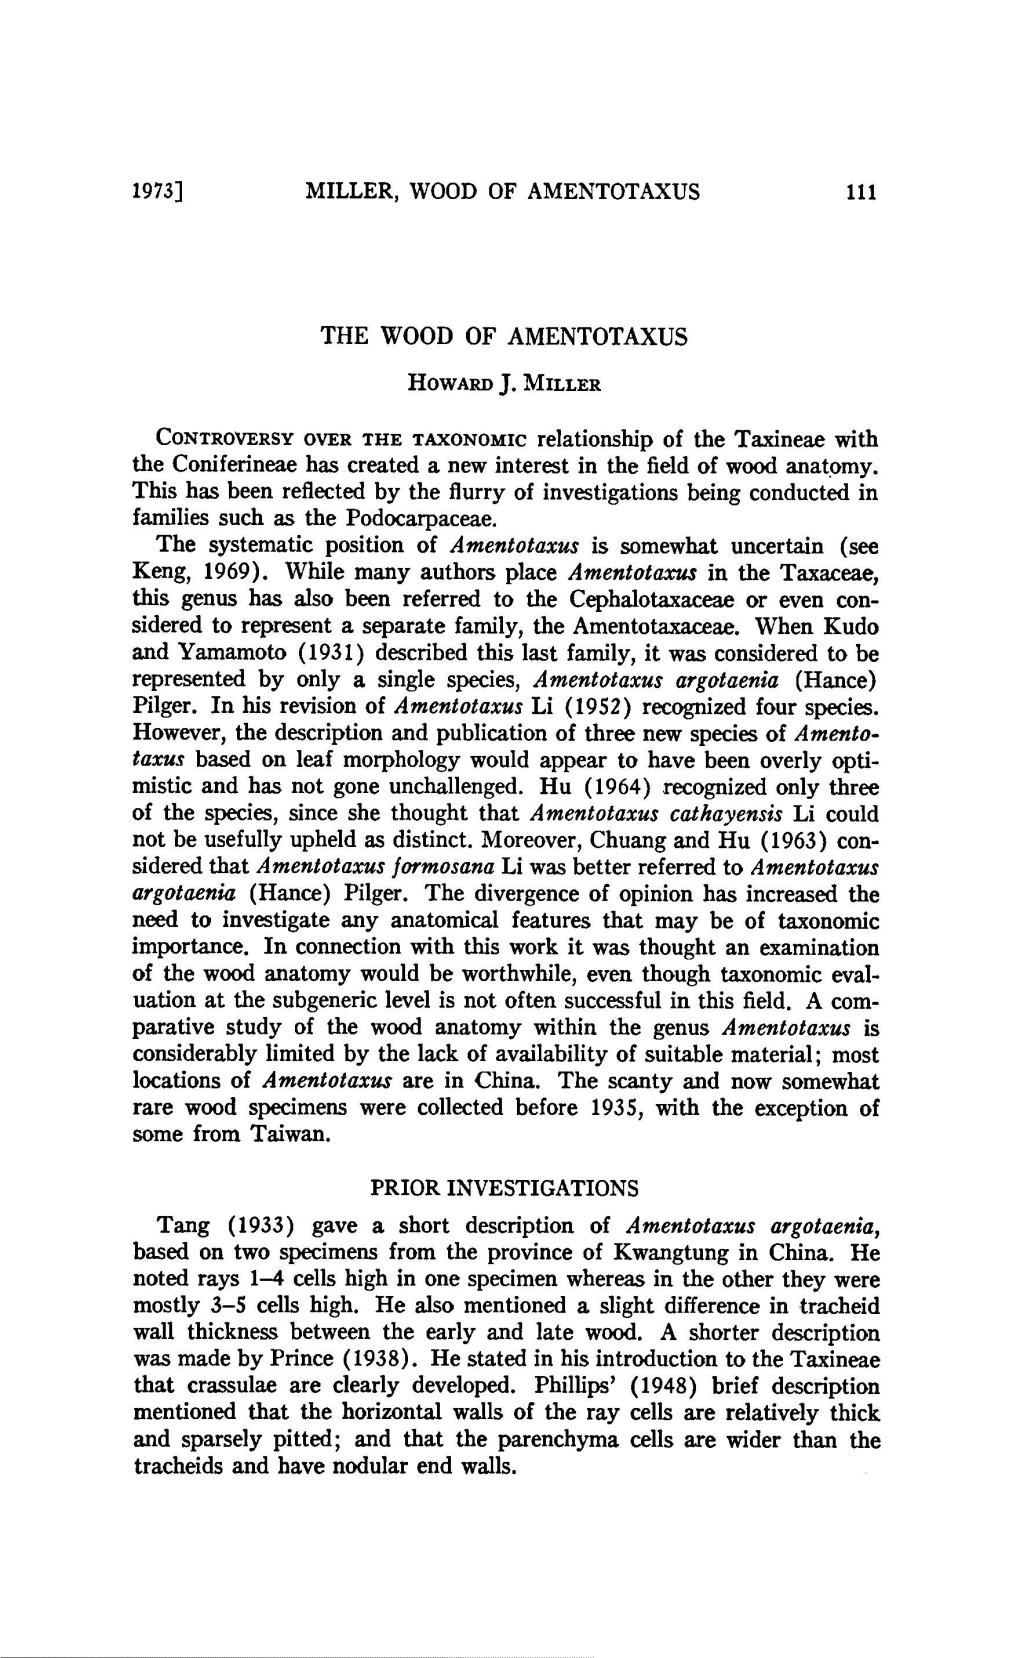 Howard+J. Miller Tang (1933) Description Argotaenia, Specimens